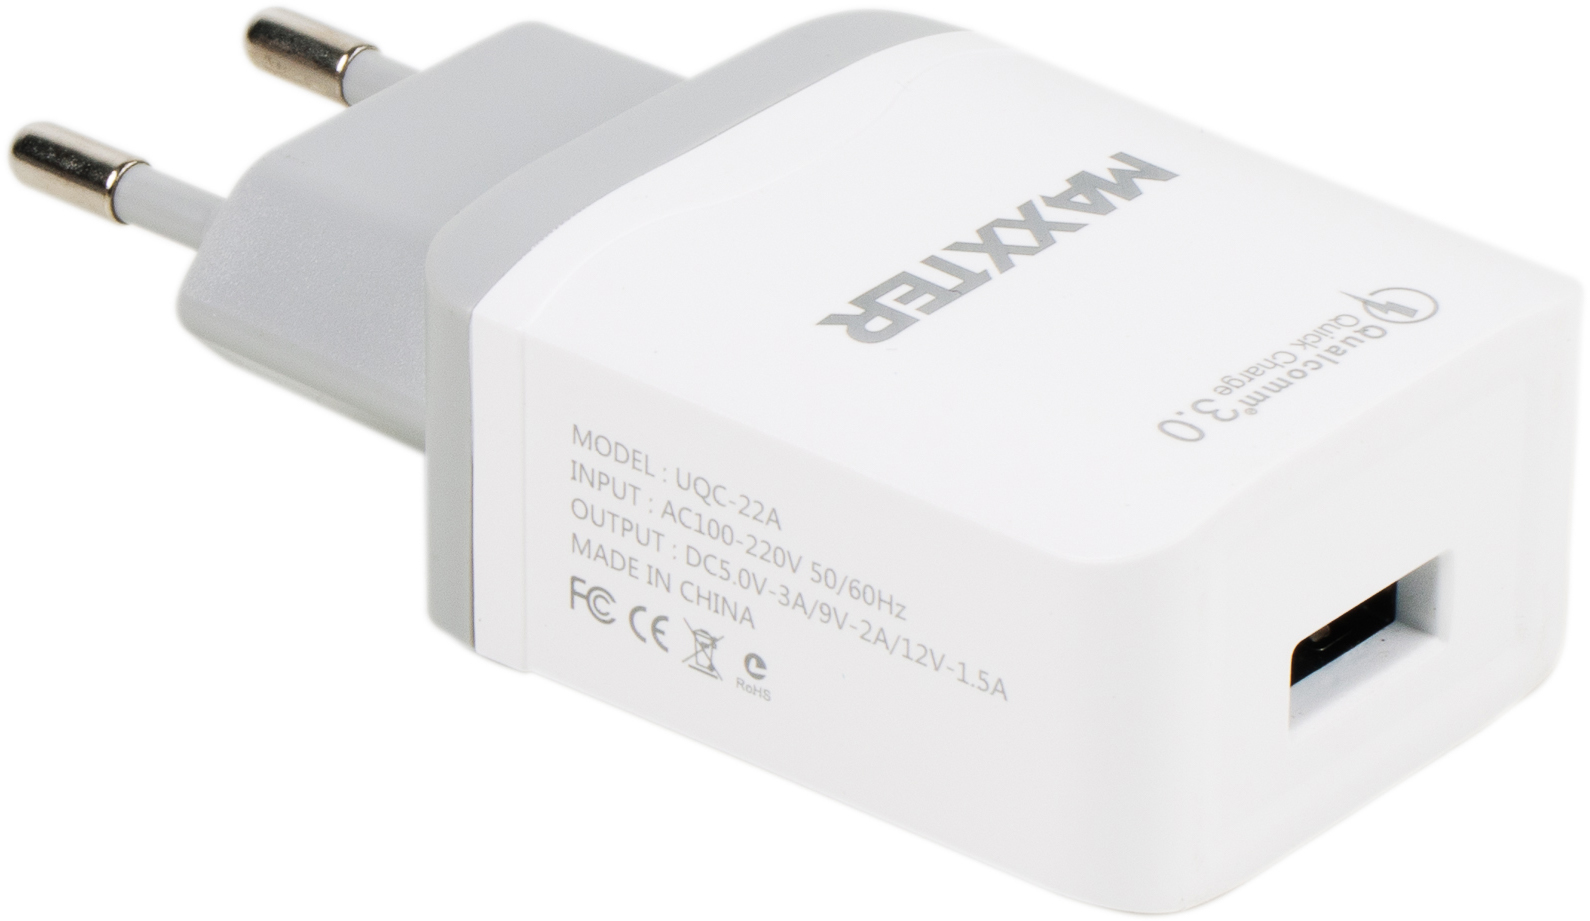 Maxxter 1 USB Qualcomm (UQC-22A)